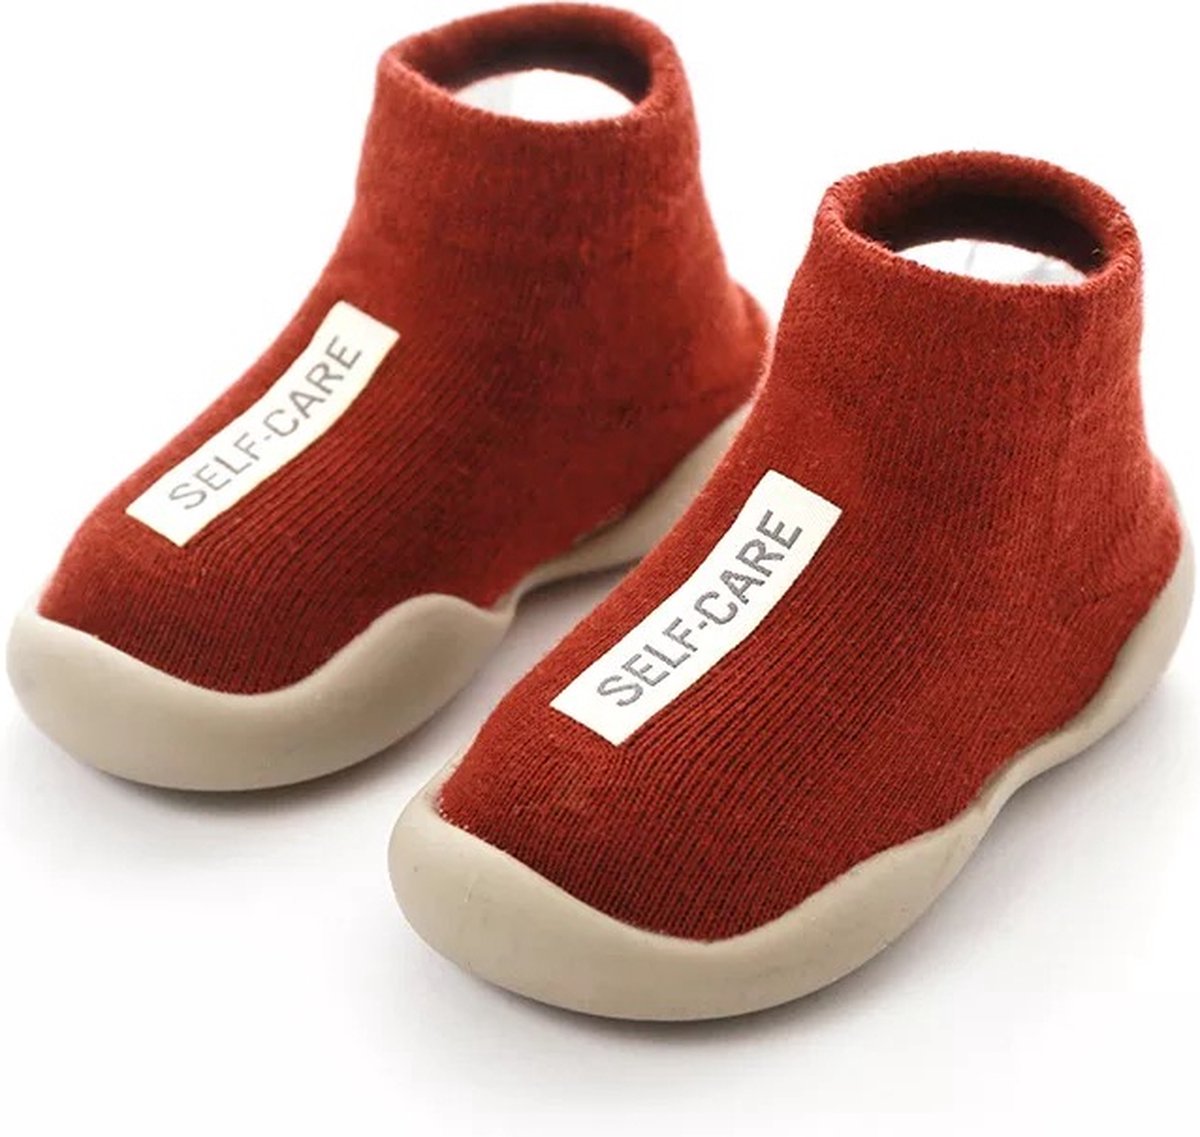 Baby Eerste Schoen | Anti Slip Babyschoen | Zachte Rubber Zool | 18-24 maanden - 13.5 cm - Rood